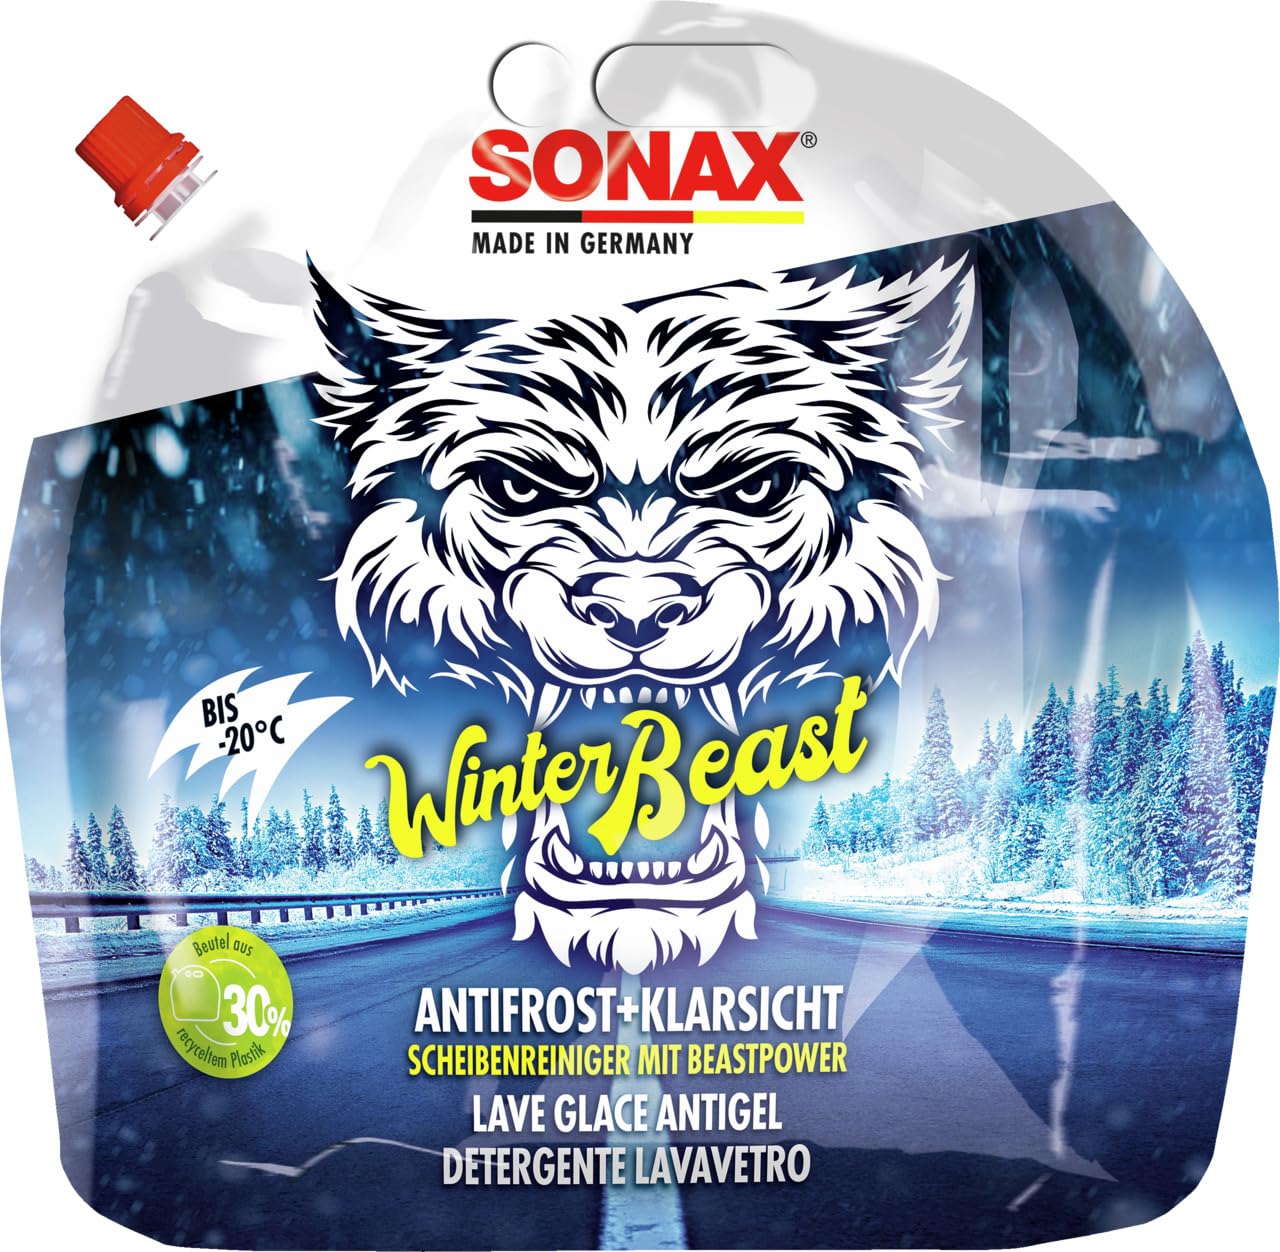 SONAX WinterBeast AntiFrost+KlarSicht Gebrauchsfertig bis -20 °C (3 Liter) schneller, schlierenfreier & effektiver Scheibenreiniger für den Winter, Art-Nr. 01354410 von SONAX